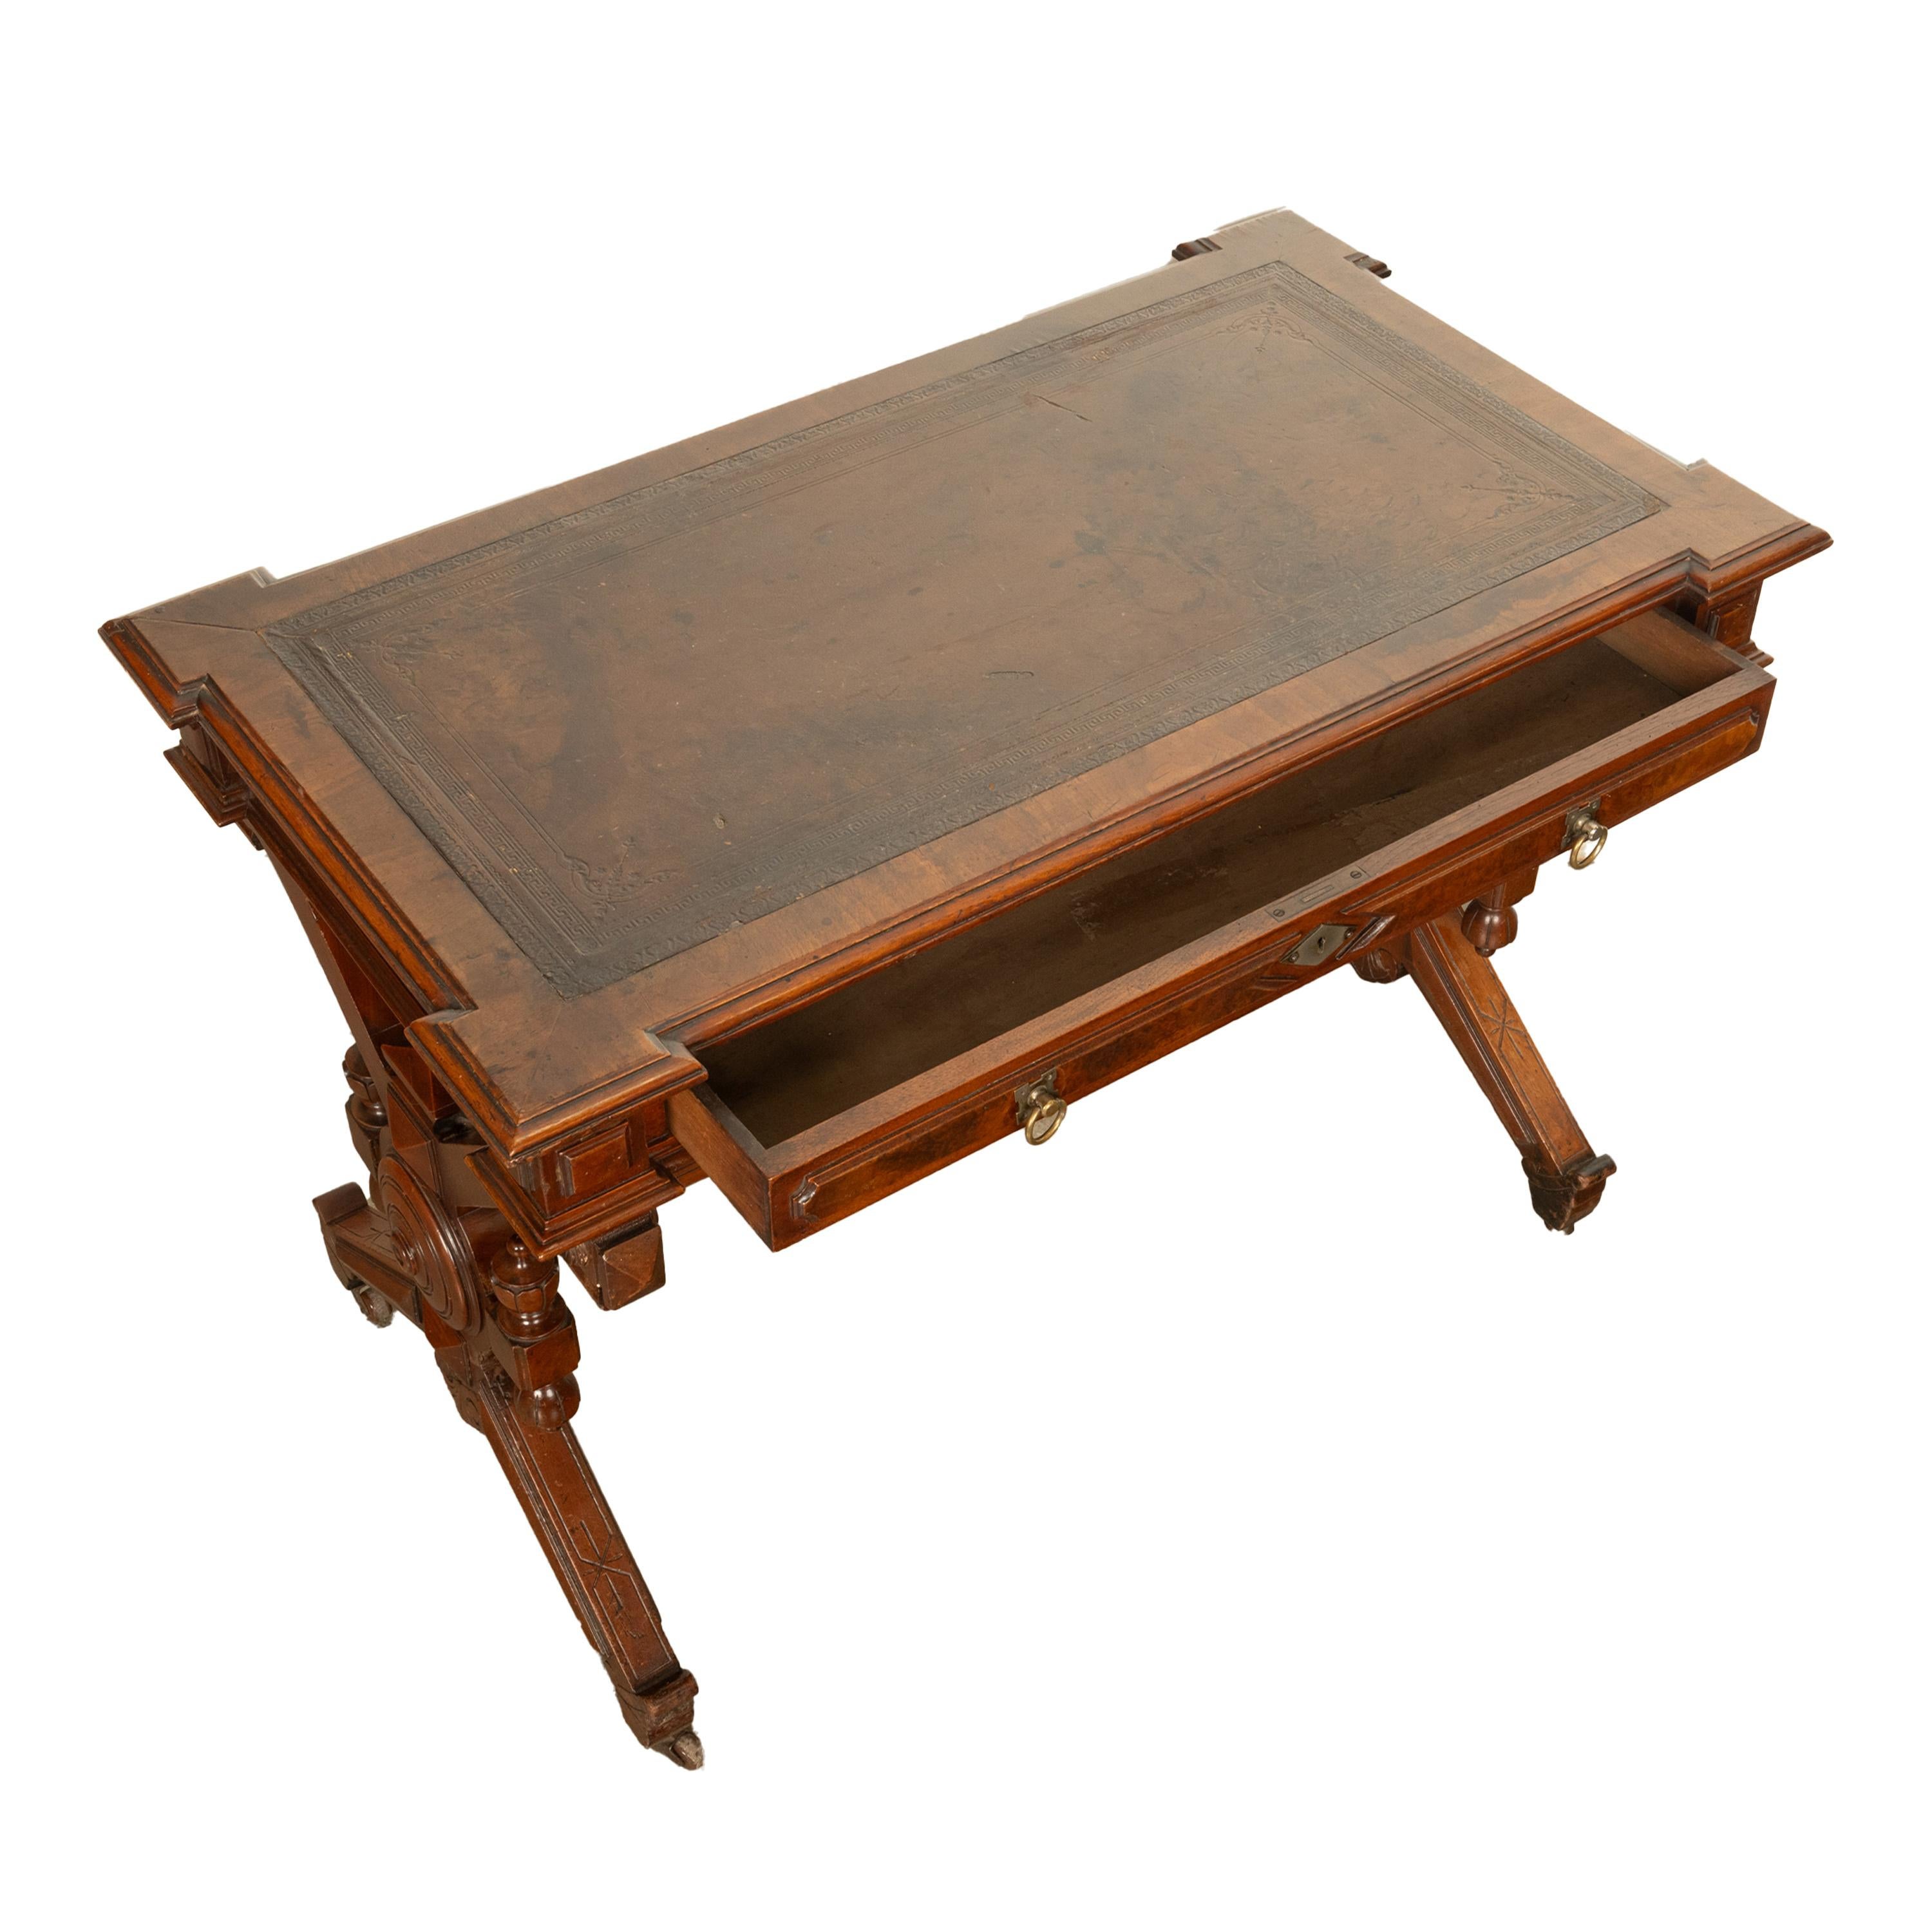 Antique American Walnut Renaissance Revival Aesthetic Movement Desk Table 1875 For Sale 1